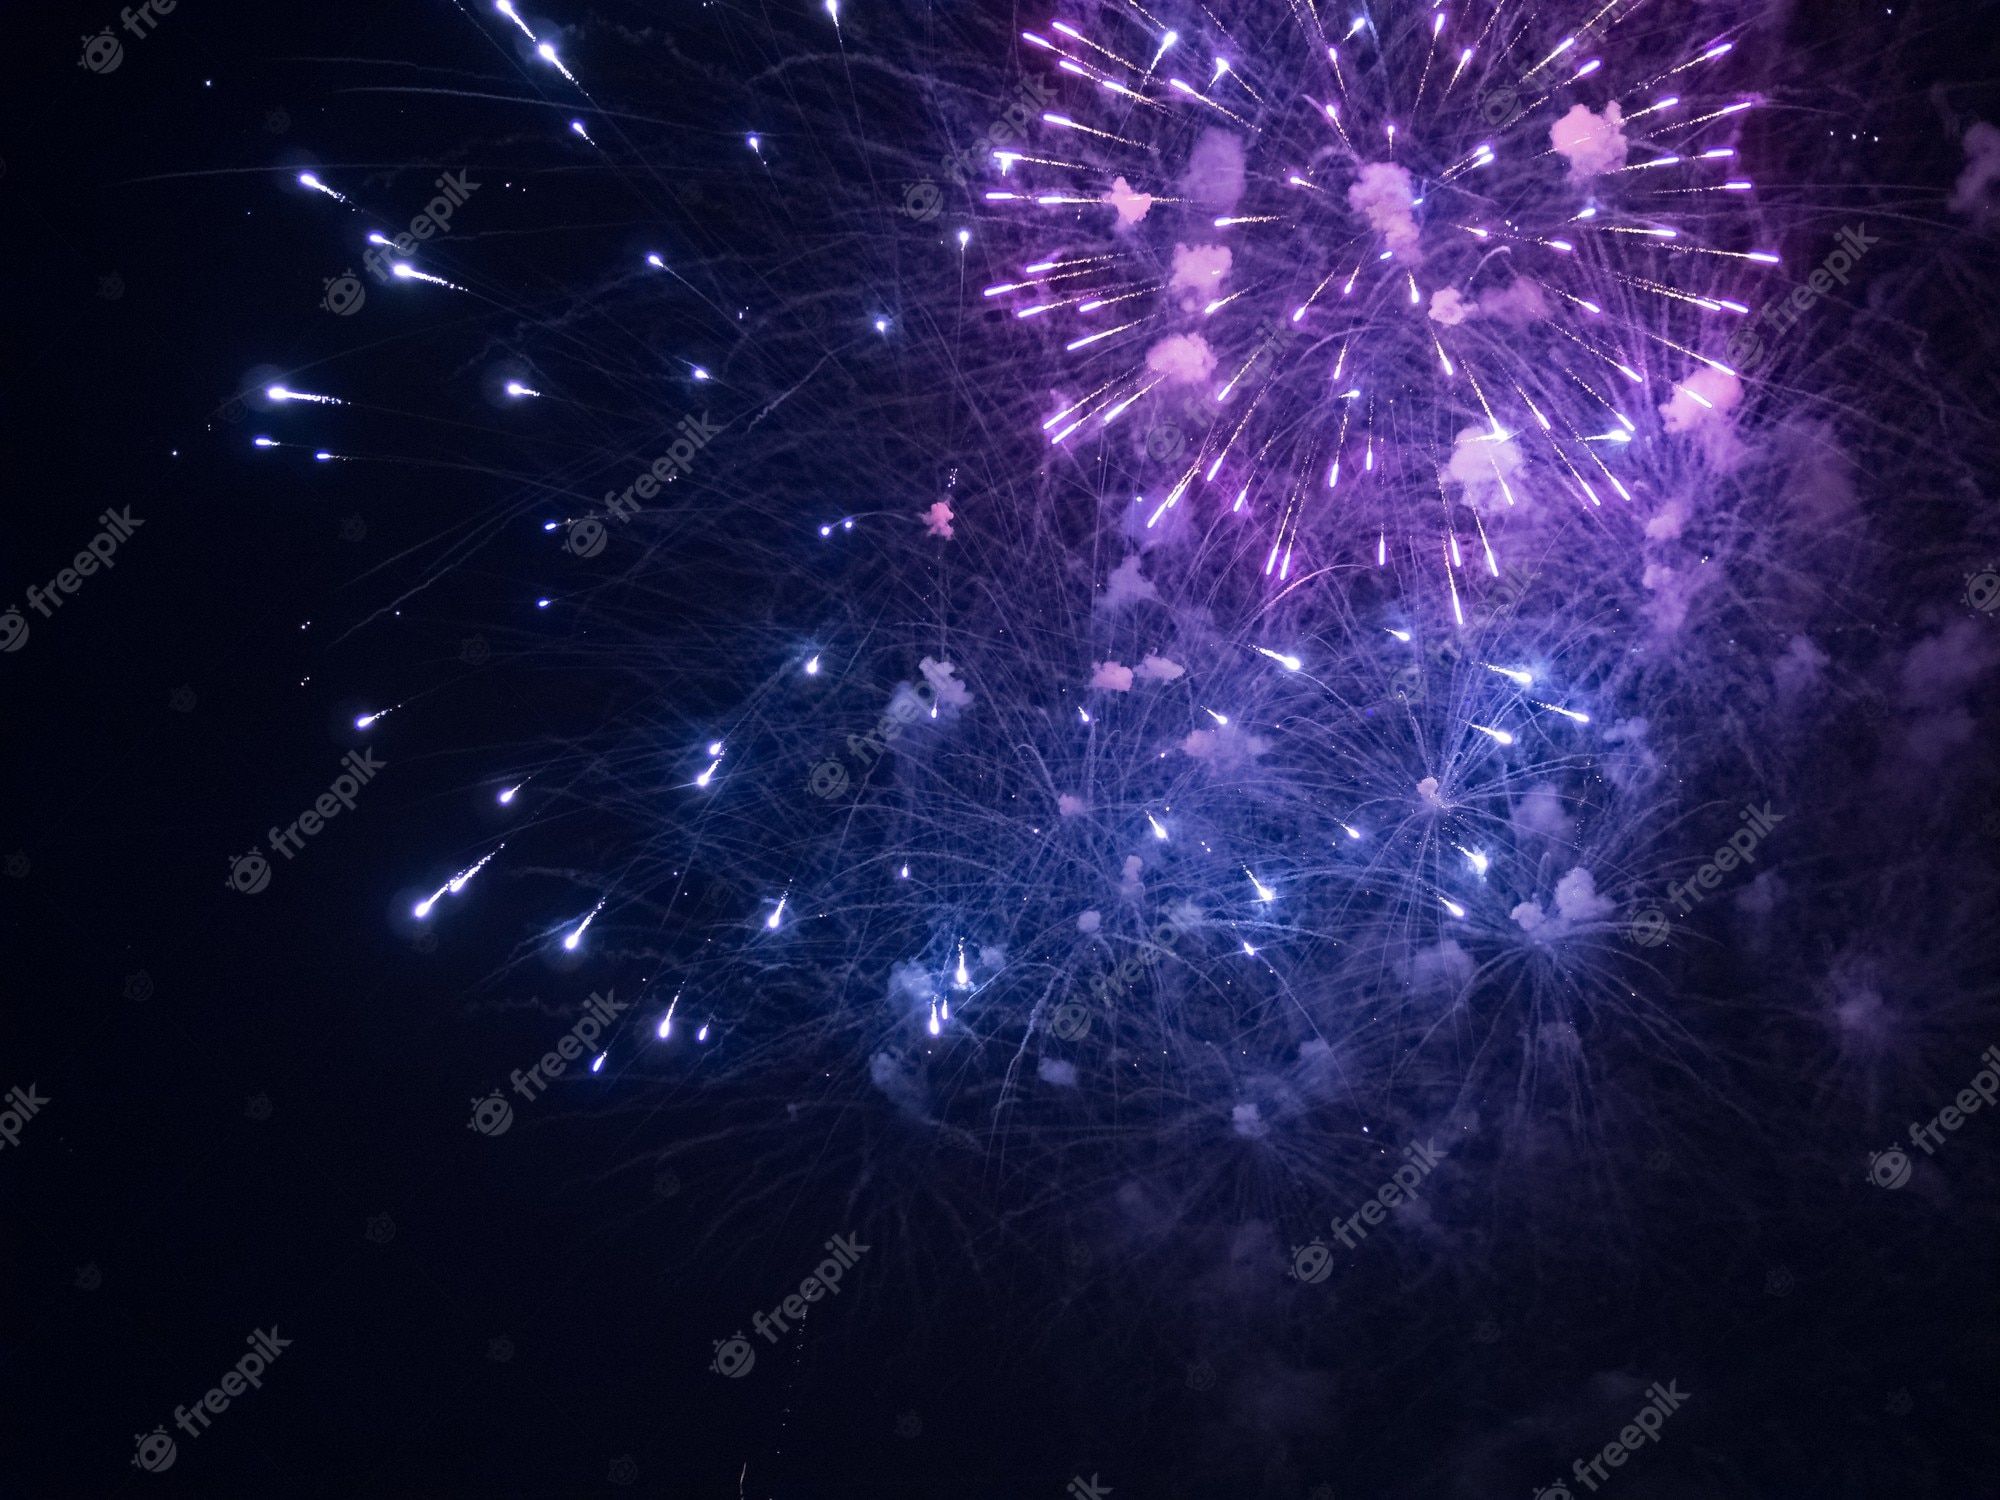  Wunderkerzen Hintergrundbild 2000x1500. Wallpaper Feuerwerk Bilder Download auf Freepik